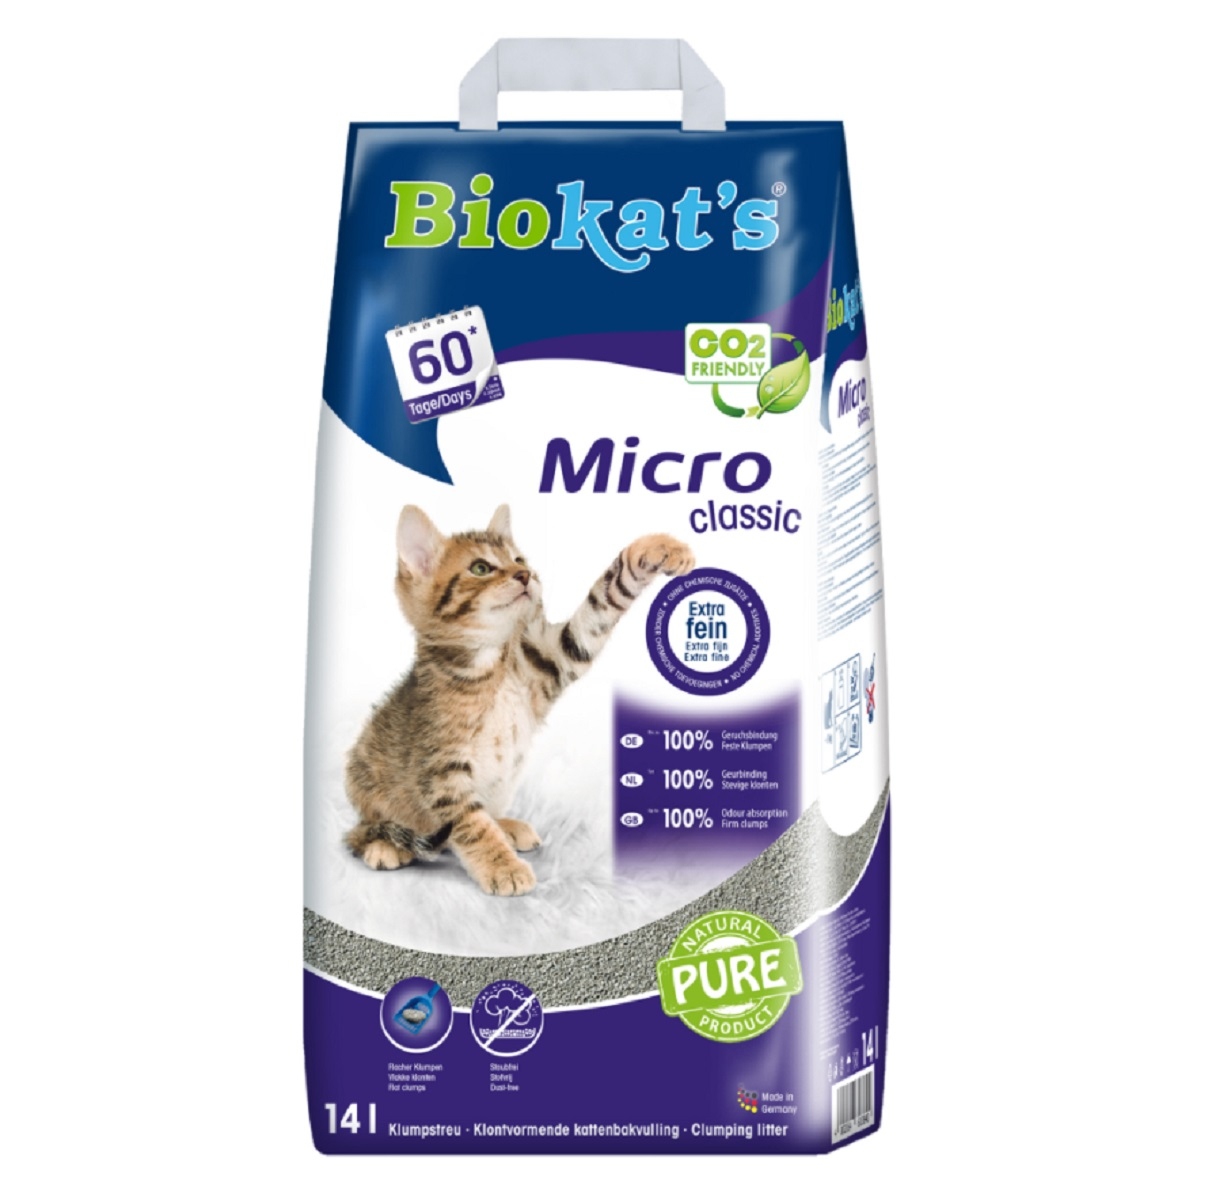 Biokat's Micro Classic Litière pour chat